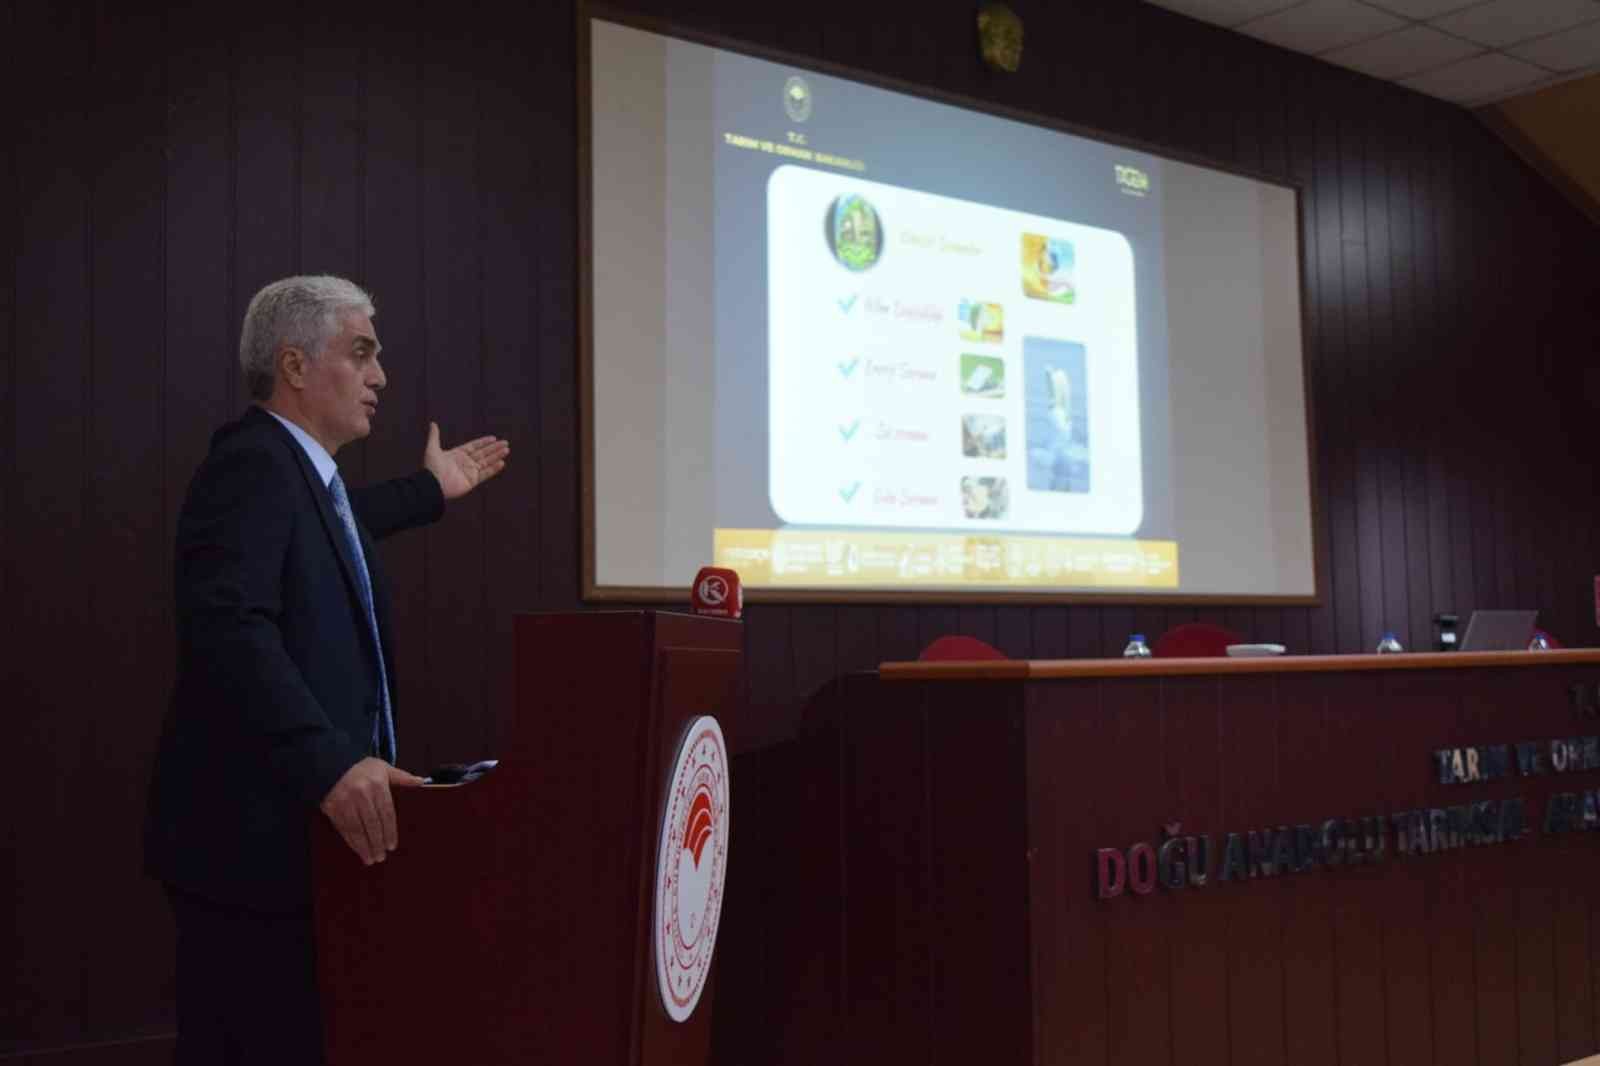 Doğu Anadolu Tarımsal Araştırma Enstitüsü, Araştırma komite toplantıları yapıldı